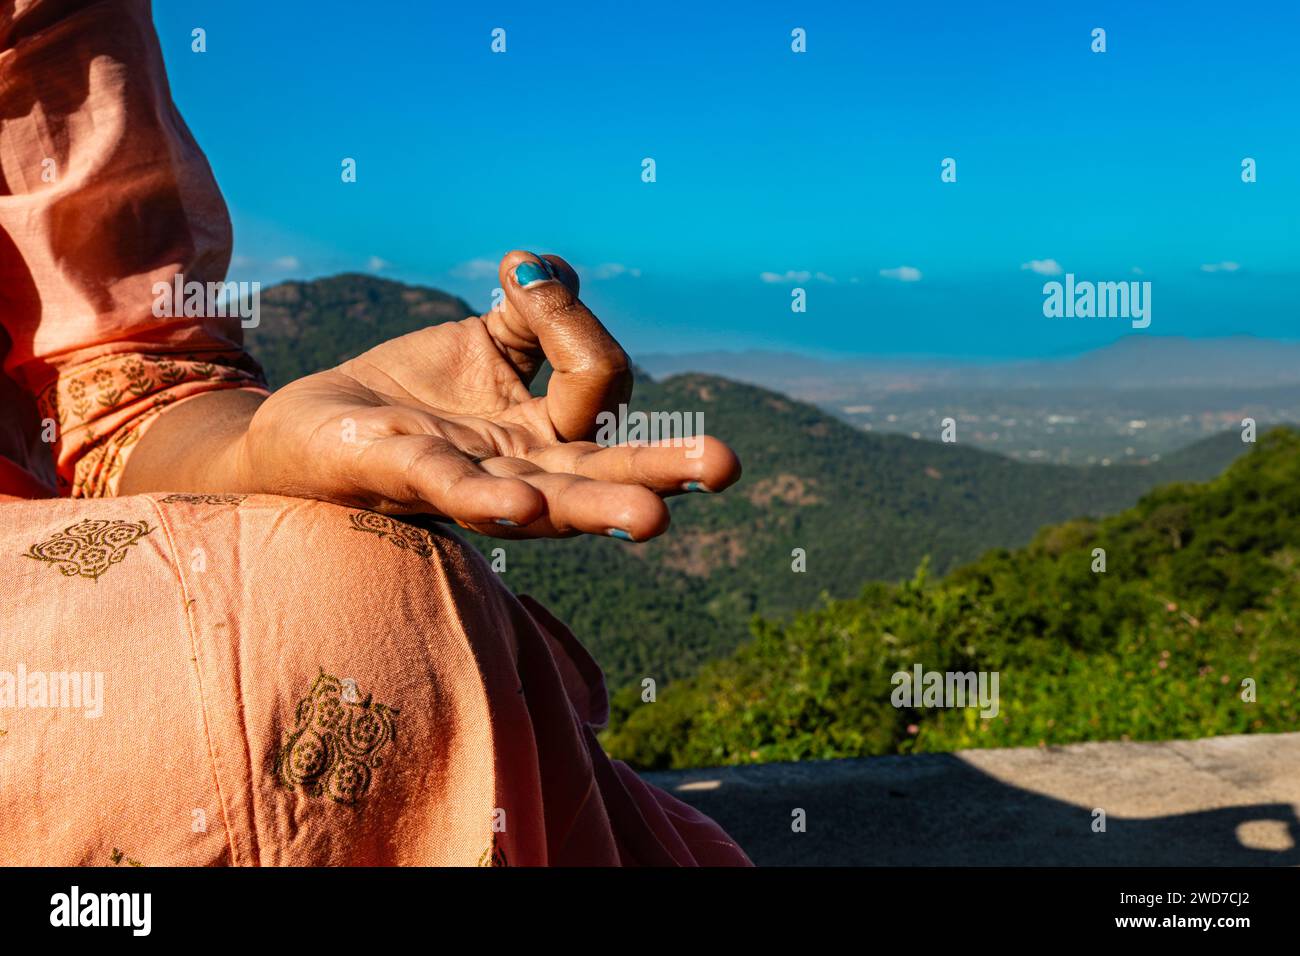 Eine Indianerin in traditioneller Kleidung findet Trost in Meditation auf einem majestätischen Berggipfel. Ihre Hände, anmutig in einer Mudra positioniert Stockfoto